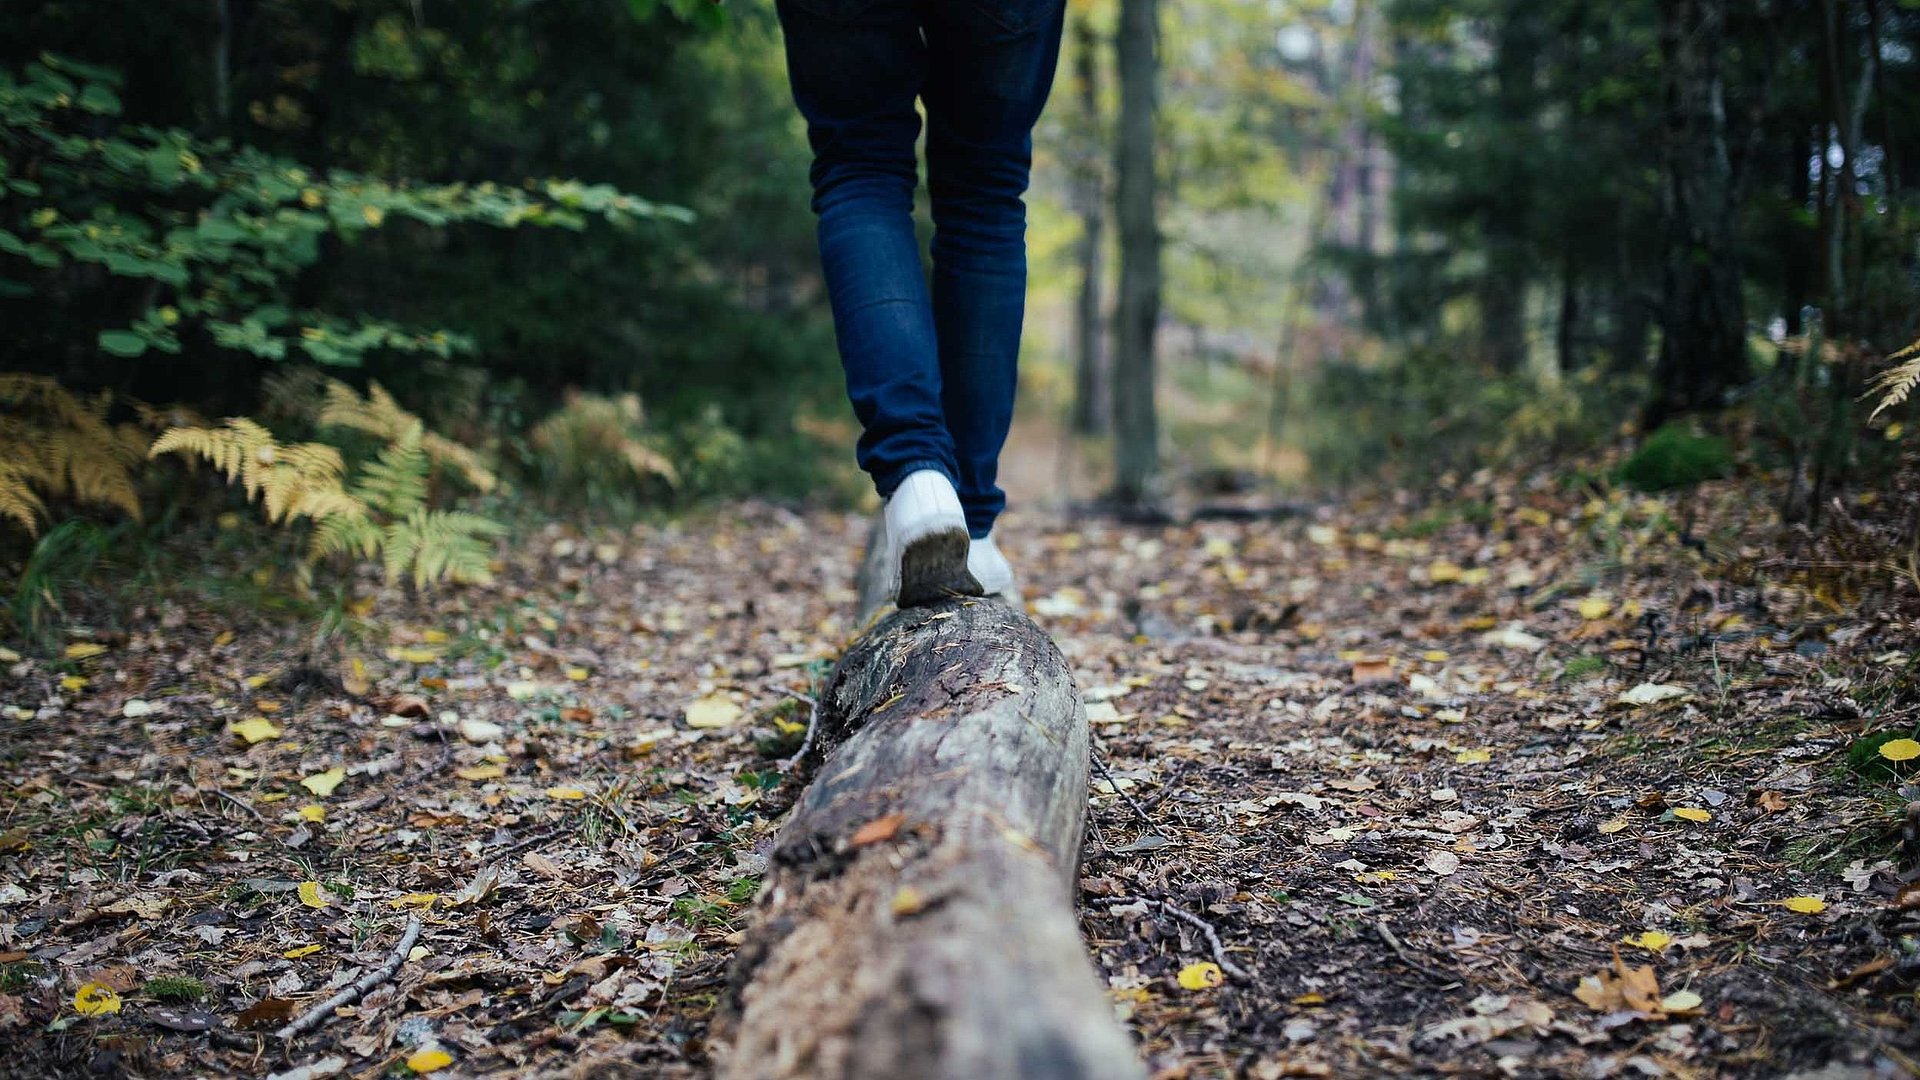 Incentives in Unterfranken - Wanderer im Wald balanciert auf Holzstamm